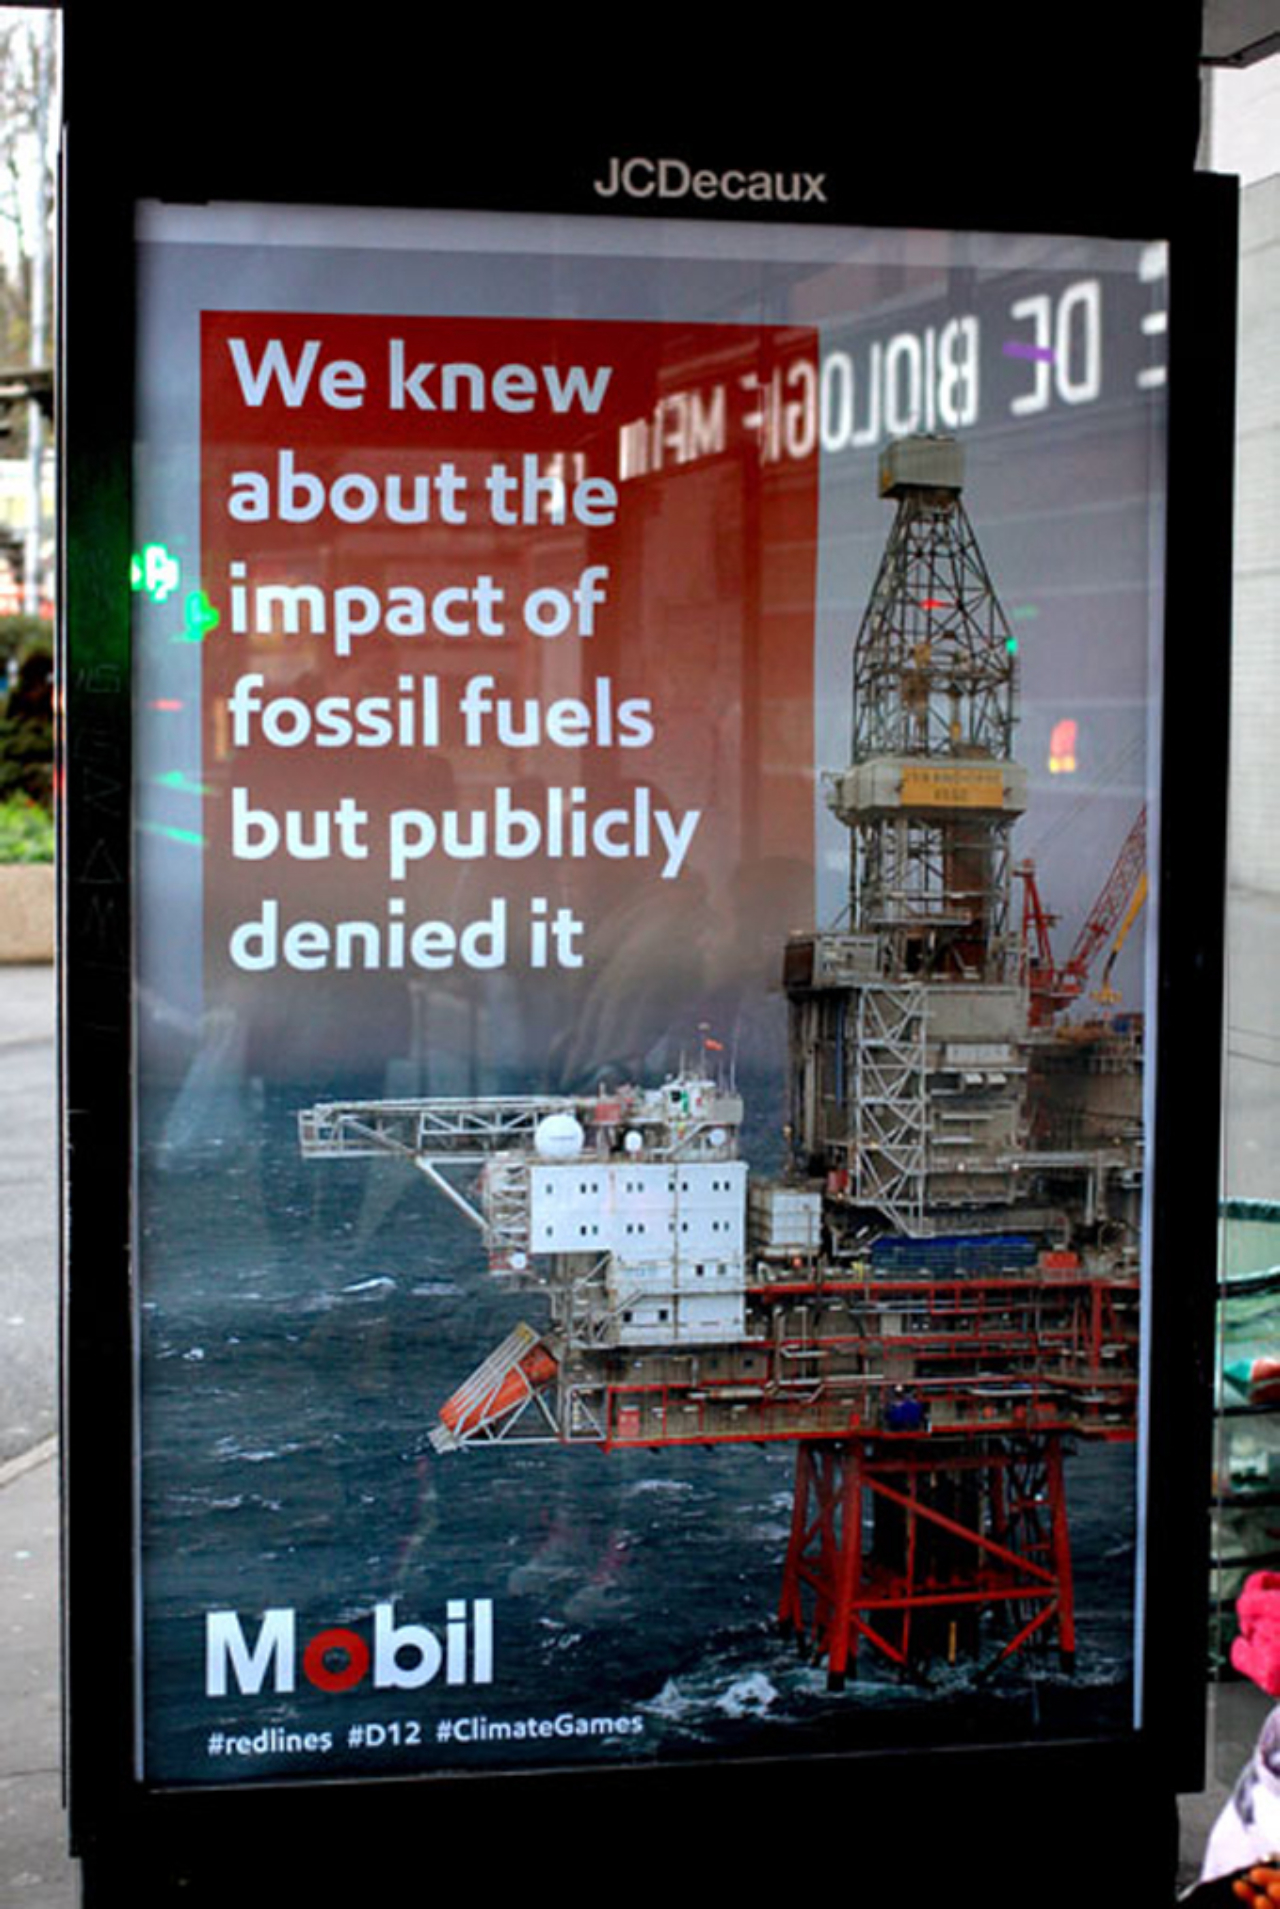 Paródia de anúncio da petrolífera Mobil. “Nós sabíamos sobre o impacto dos combustíveis fósseis, mas a publicidade negou”. Imagem: Brandalism, arte de Barnbrook.